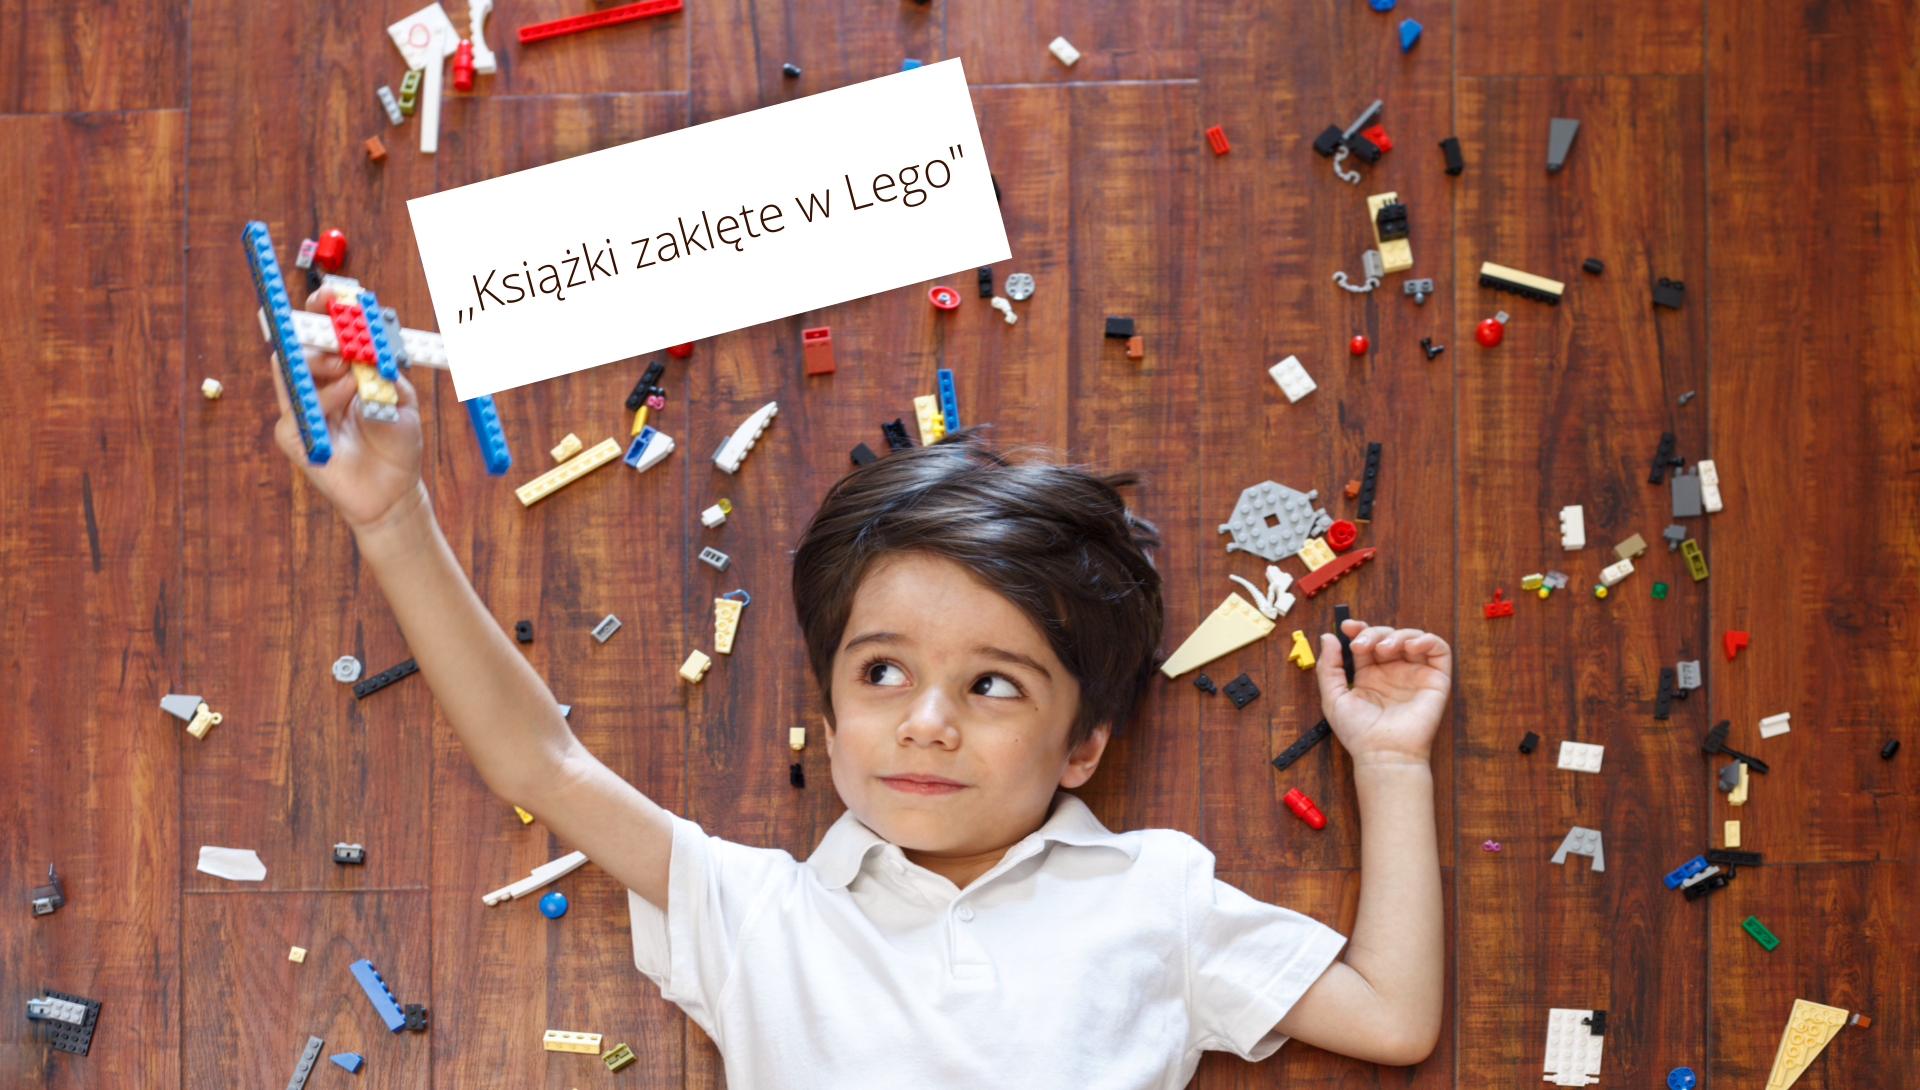 Chłopiec leży na podłodze wśród kolorowych klocków Lego i trzyma w prawej, uniesionej do góry ręce, zrobiony z nich samolocik. U góry napis ,,Książka zaklęta w Lego".